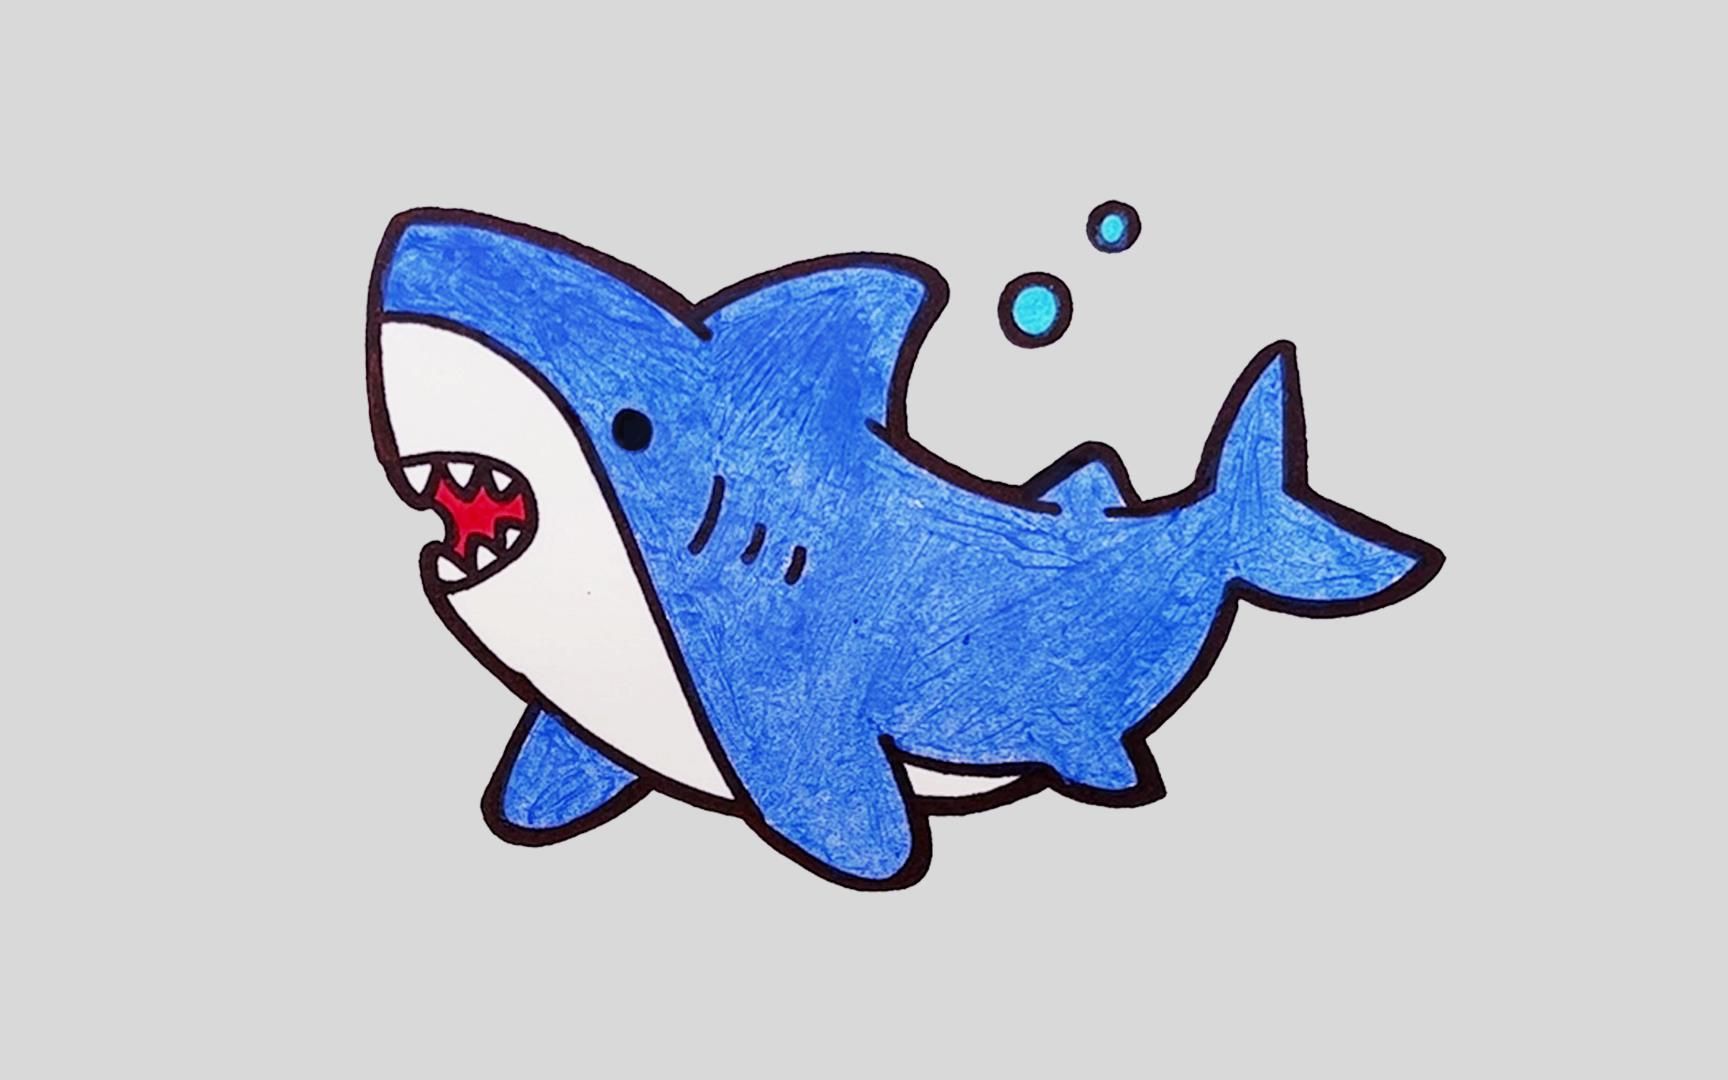 鲨鱼最简单的画法漫画图片